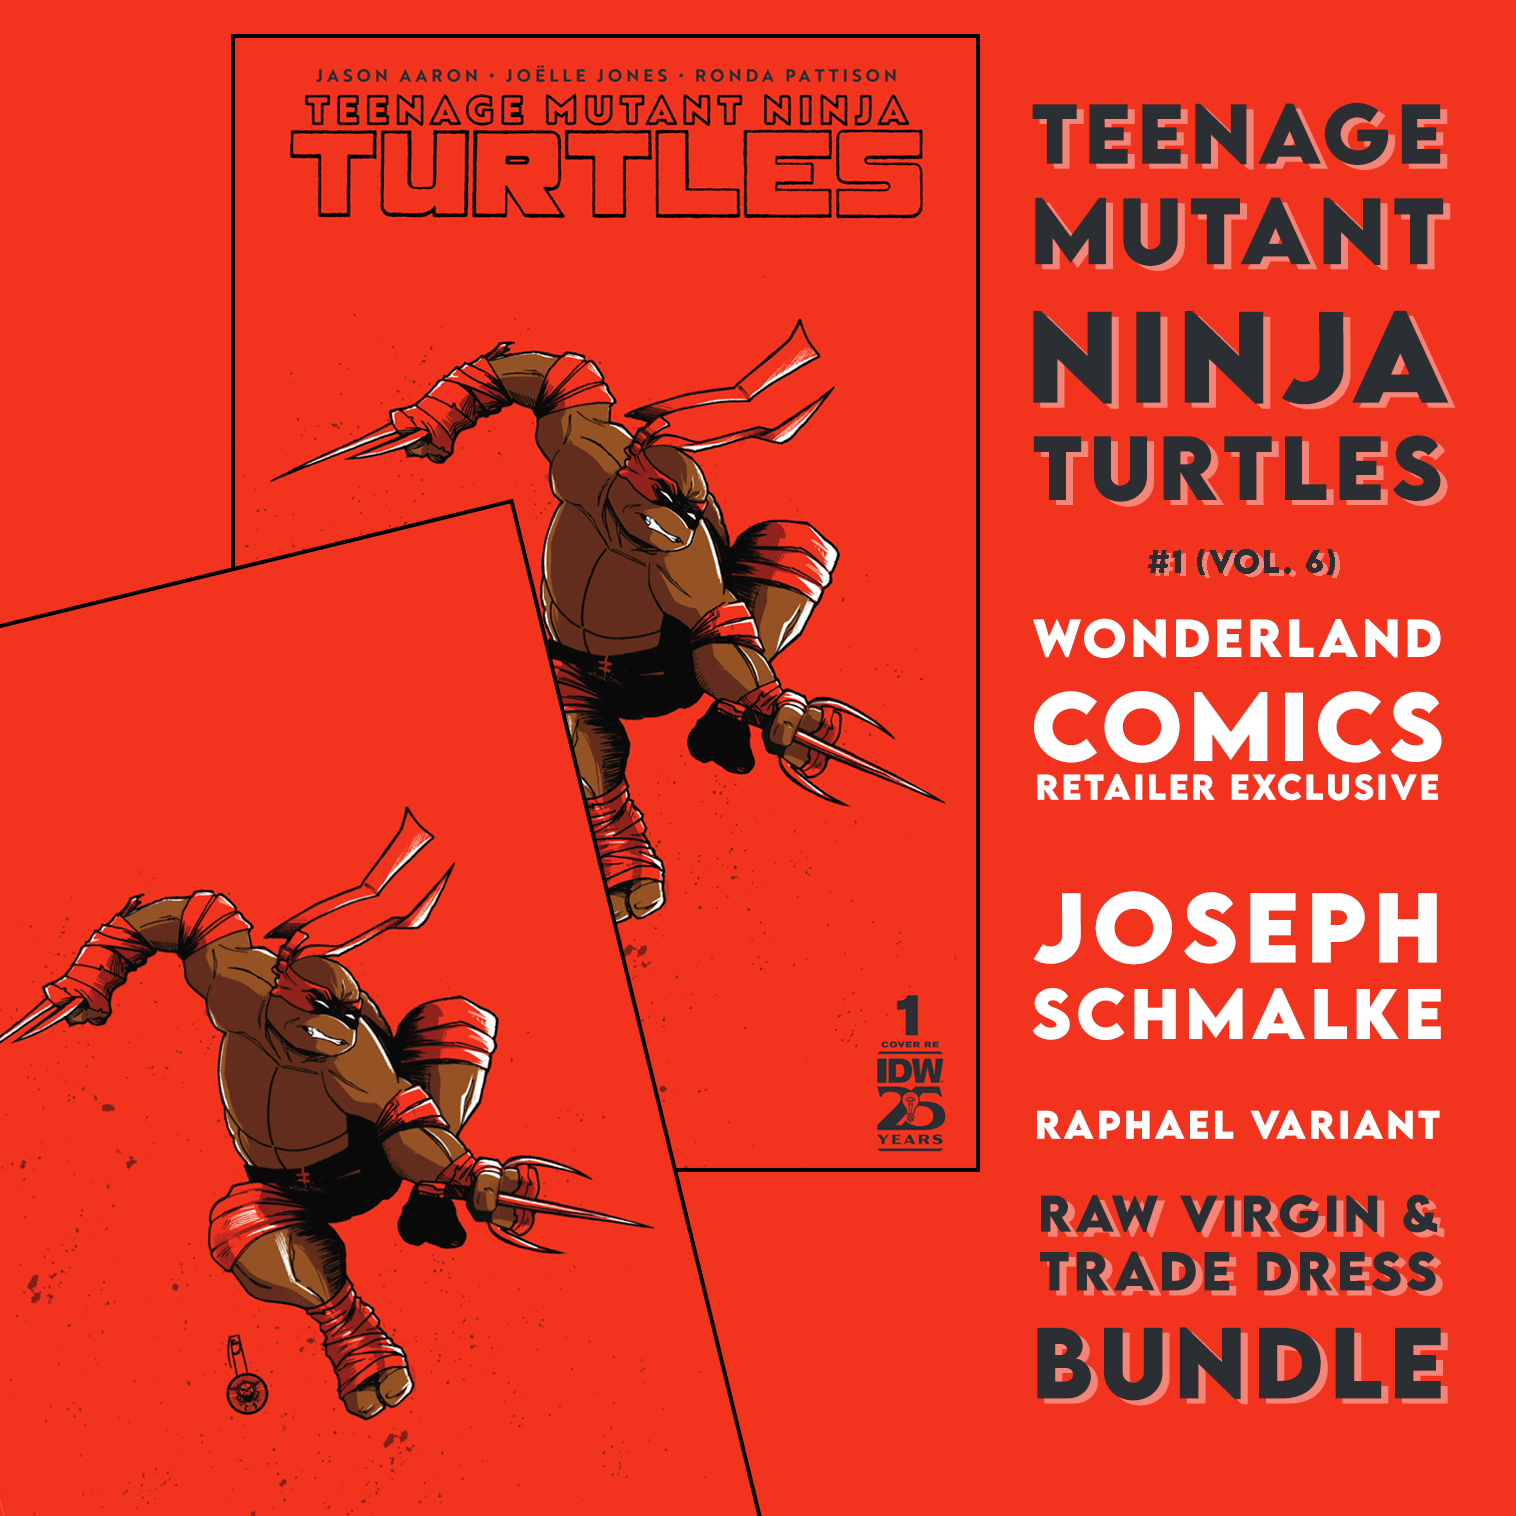 Teenage Mutant Ninja Turtles  Volume 6 #1 Wonderland Comics Retailer Exclusive Raphael Bundle